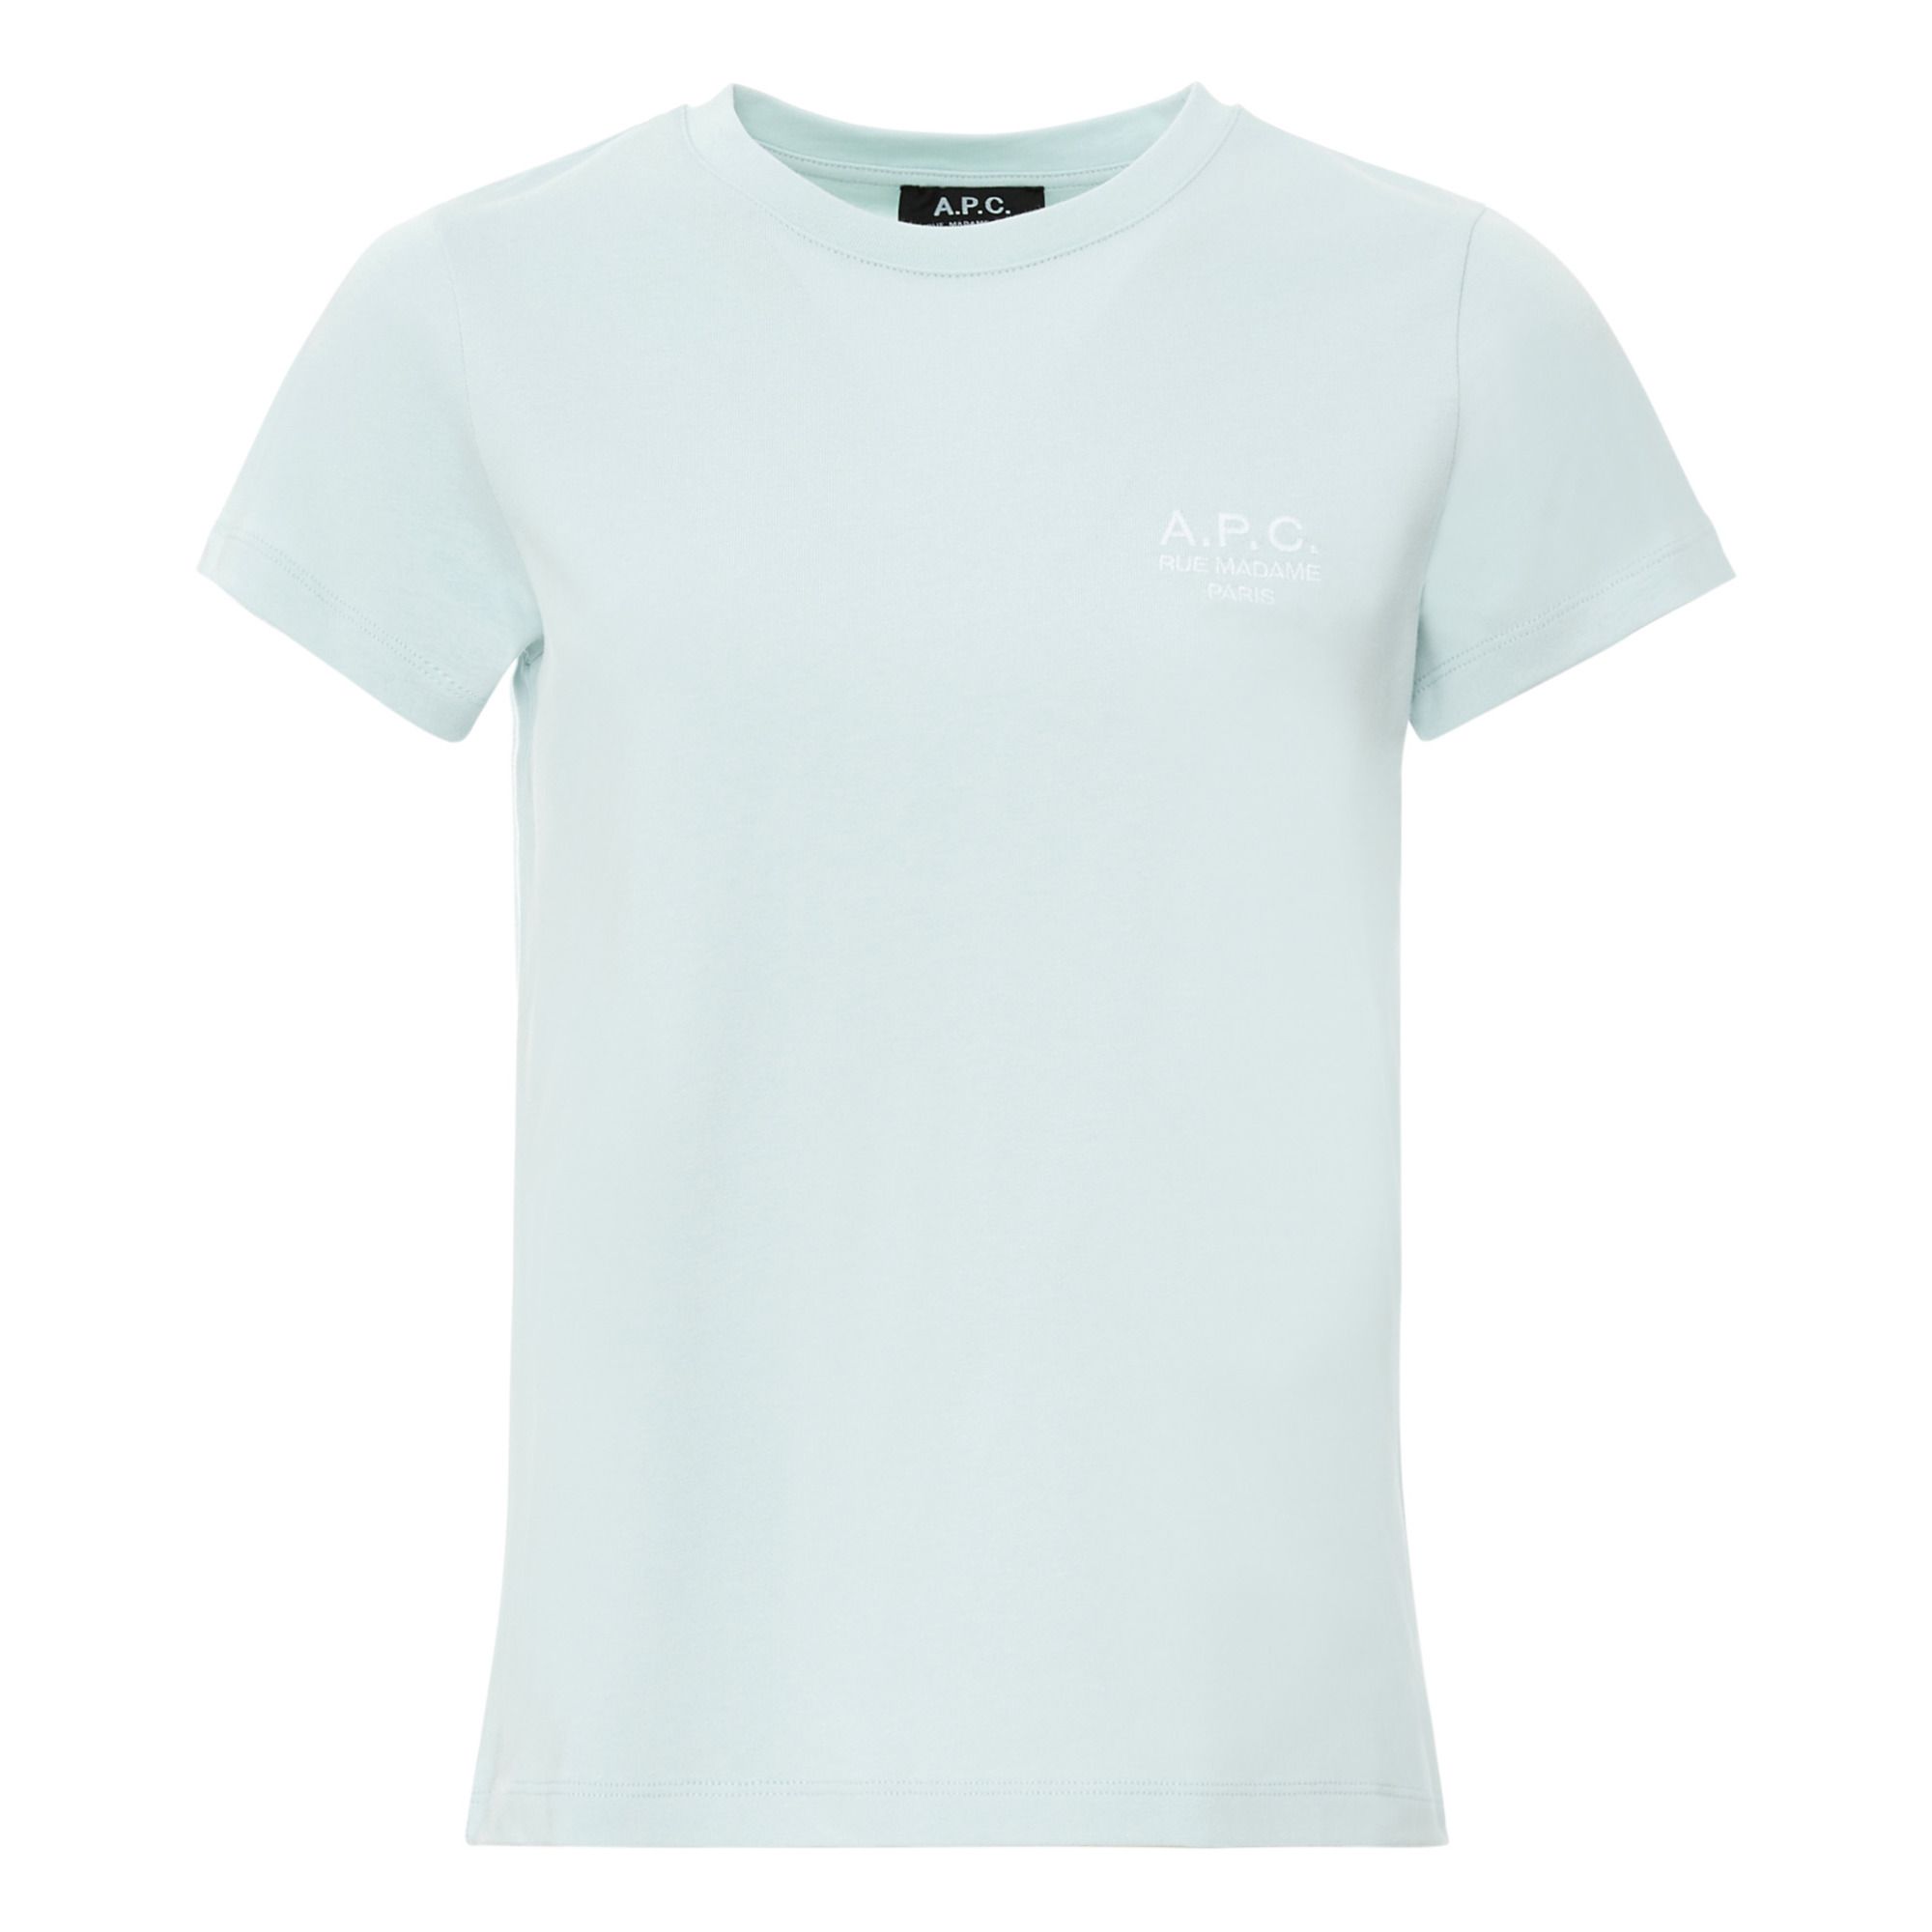 A.P.C. - T-shirt Denise - Femme - Vert d'eau